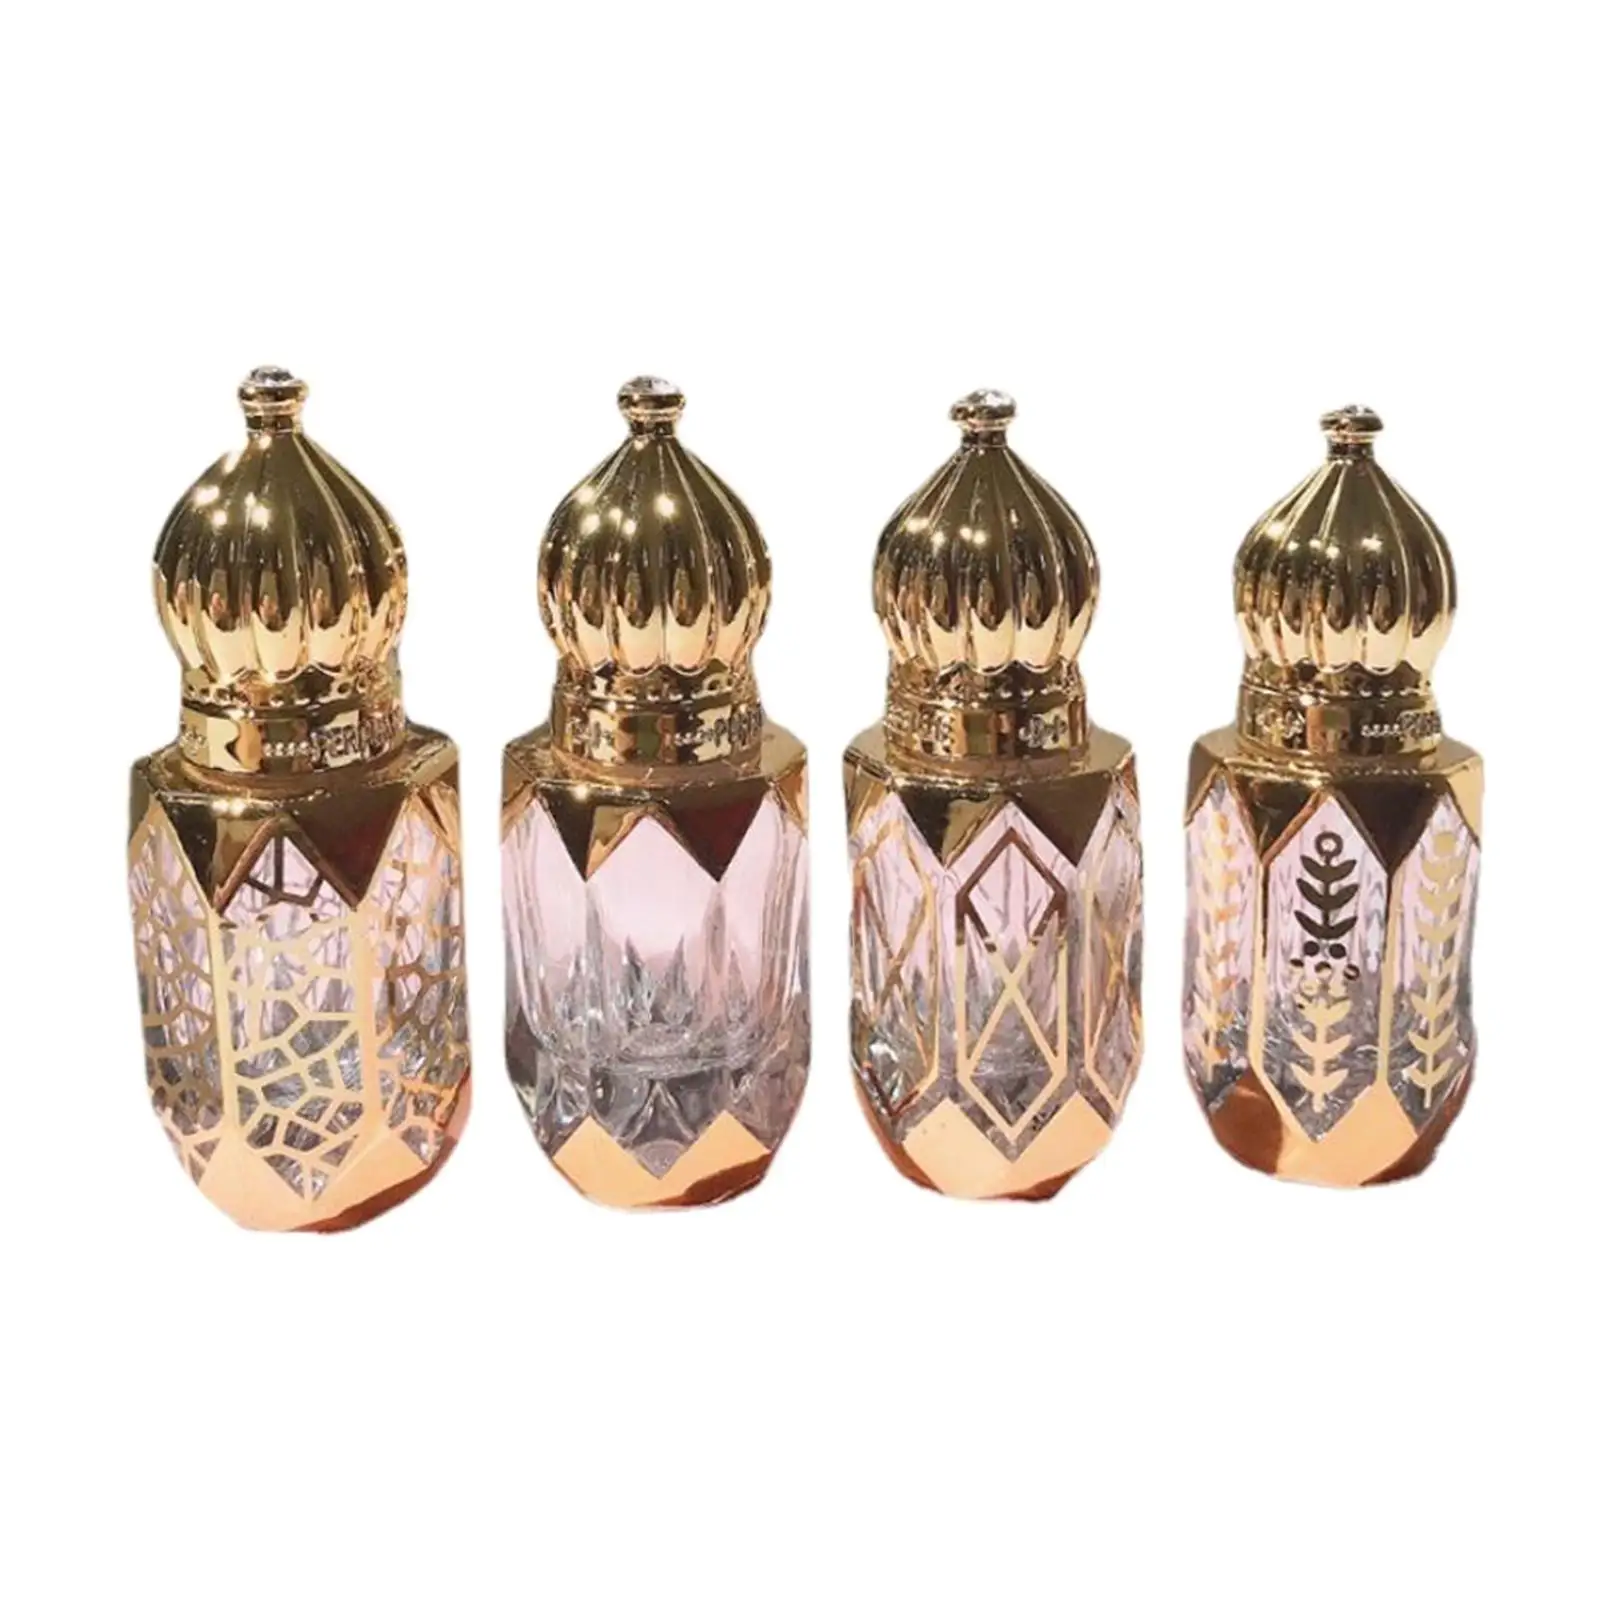 4x Roll On Bottles Golden Roller Ball Arabic 6ml Luxury Mini Portable Container Roller Bottles Vial for Fragrance Perfume Travel